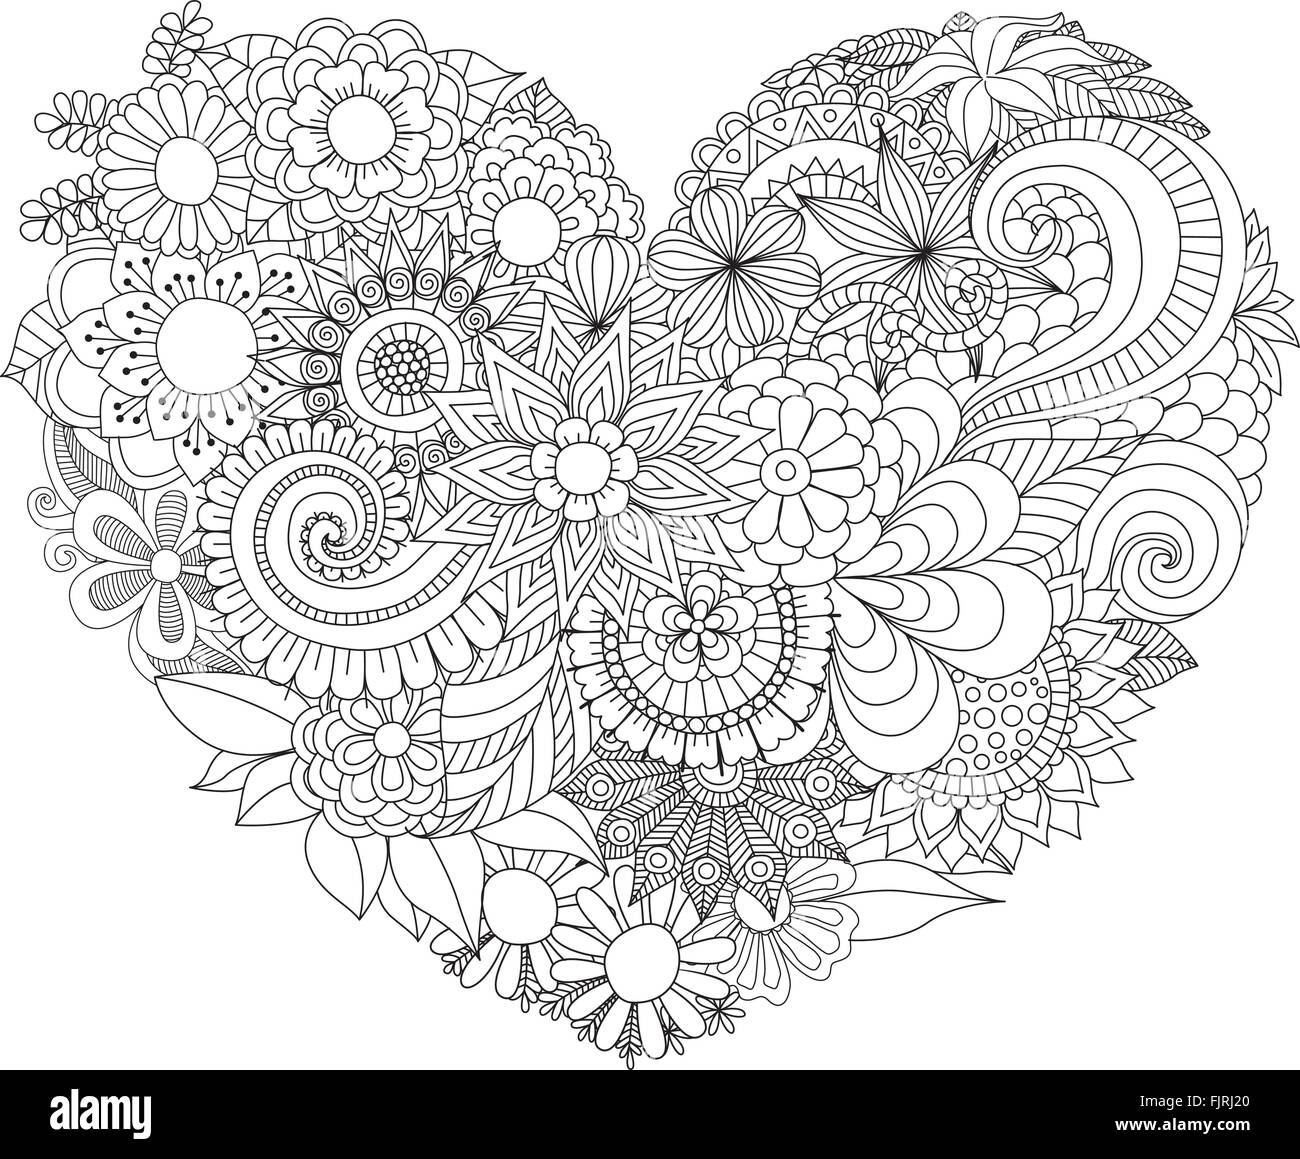 Line art design de belles fleurs en forme de coeur pour la carte,invitation,élément design et livre de coloriage adultes page. Vector illustration Illustration de Vecteur